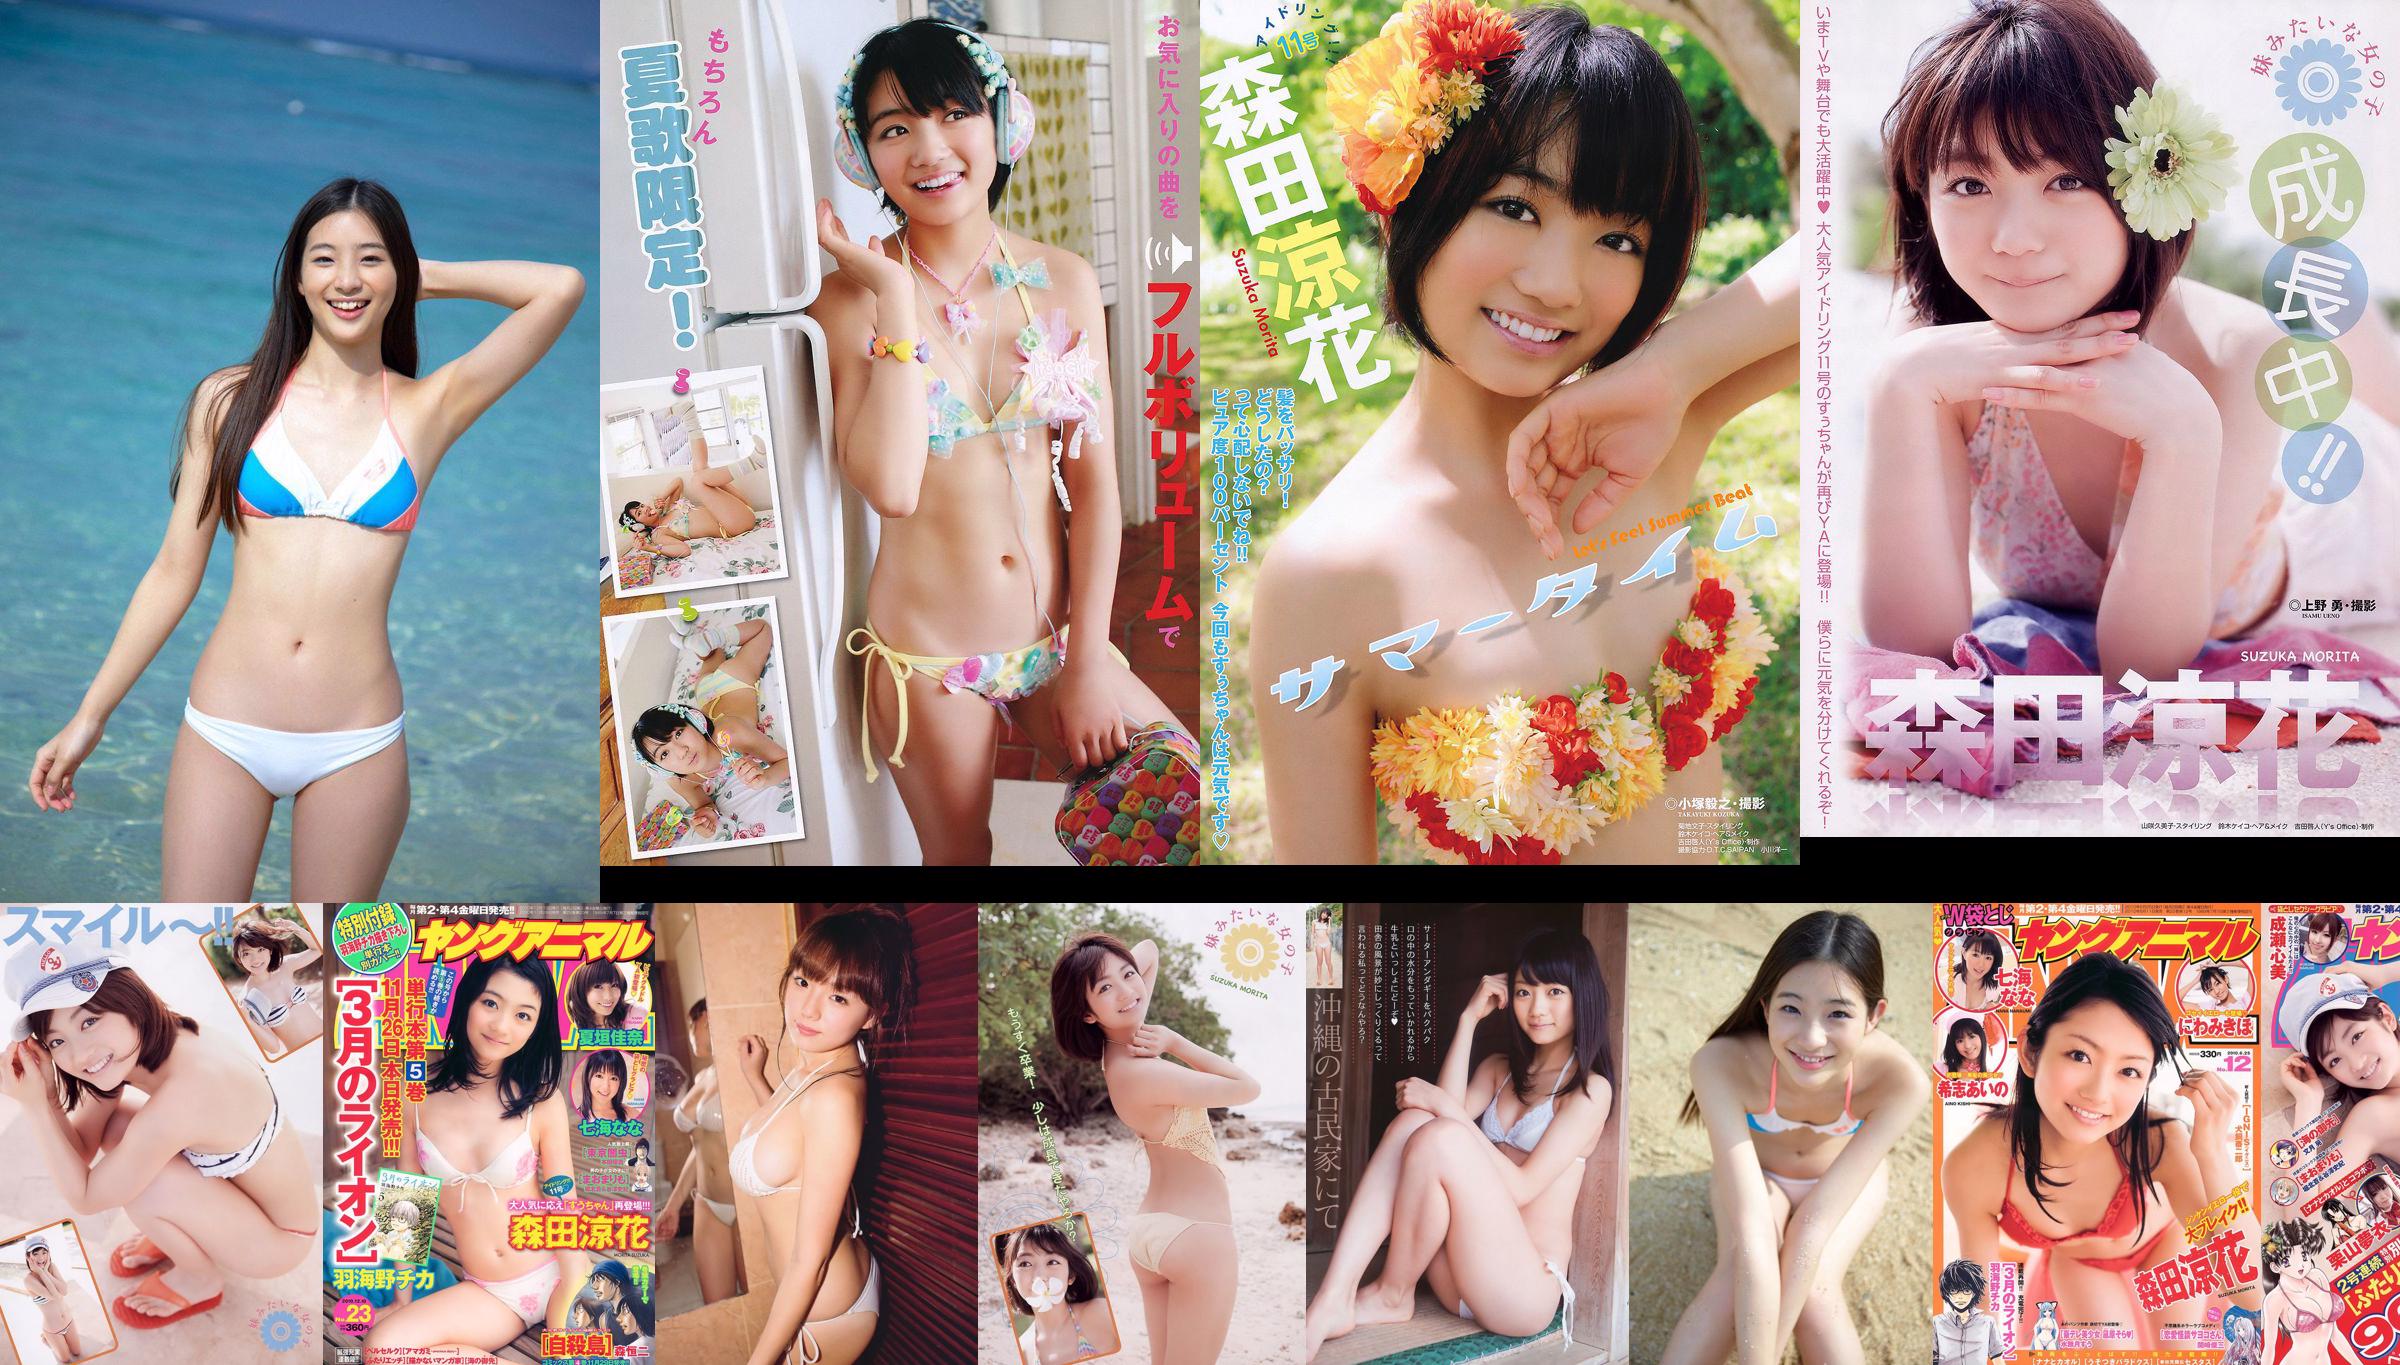 [Weekly Big Comic Spirits] Akari Hayami 2014 No.46 Photograph No.facc4c Page 2